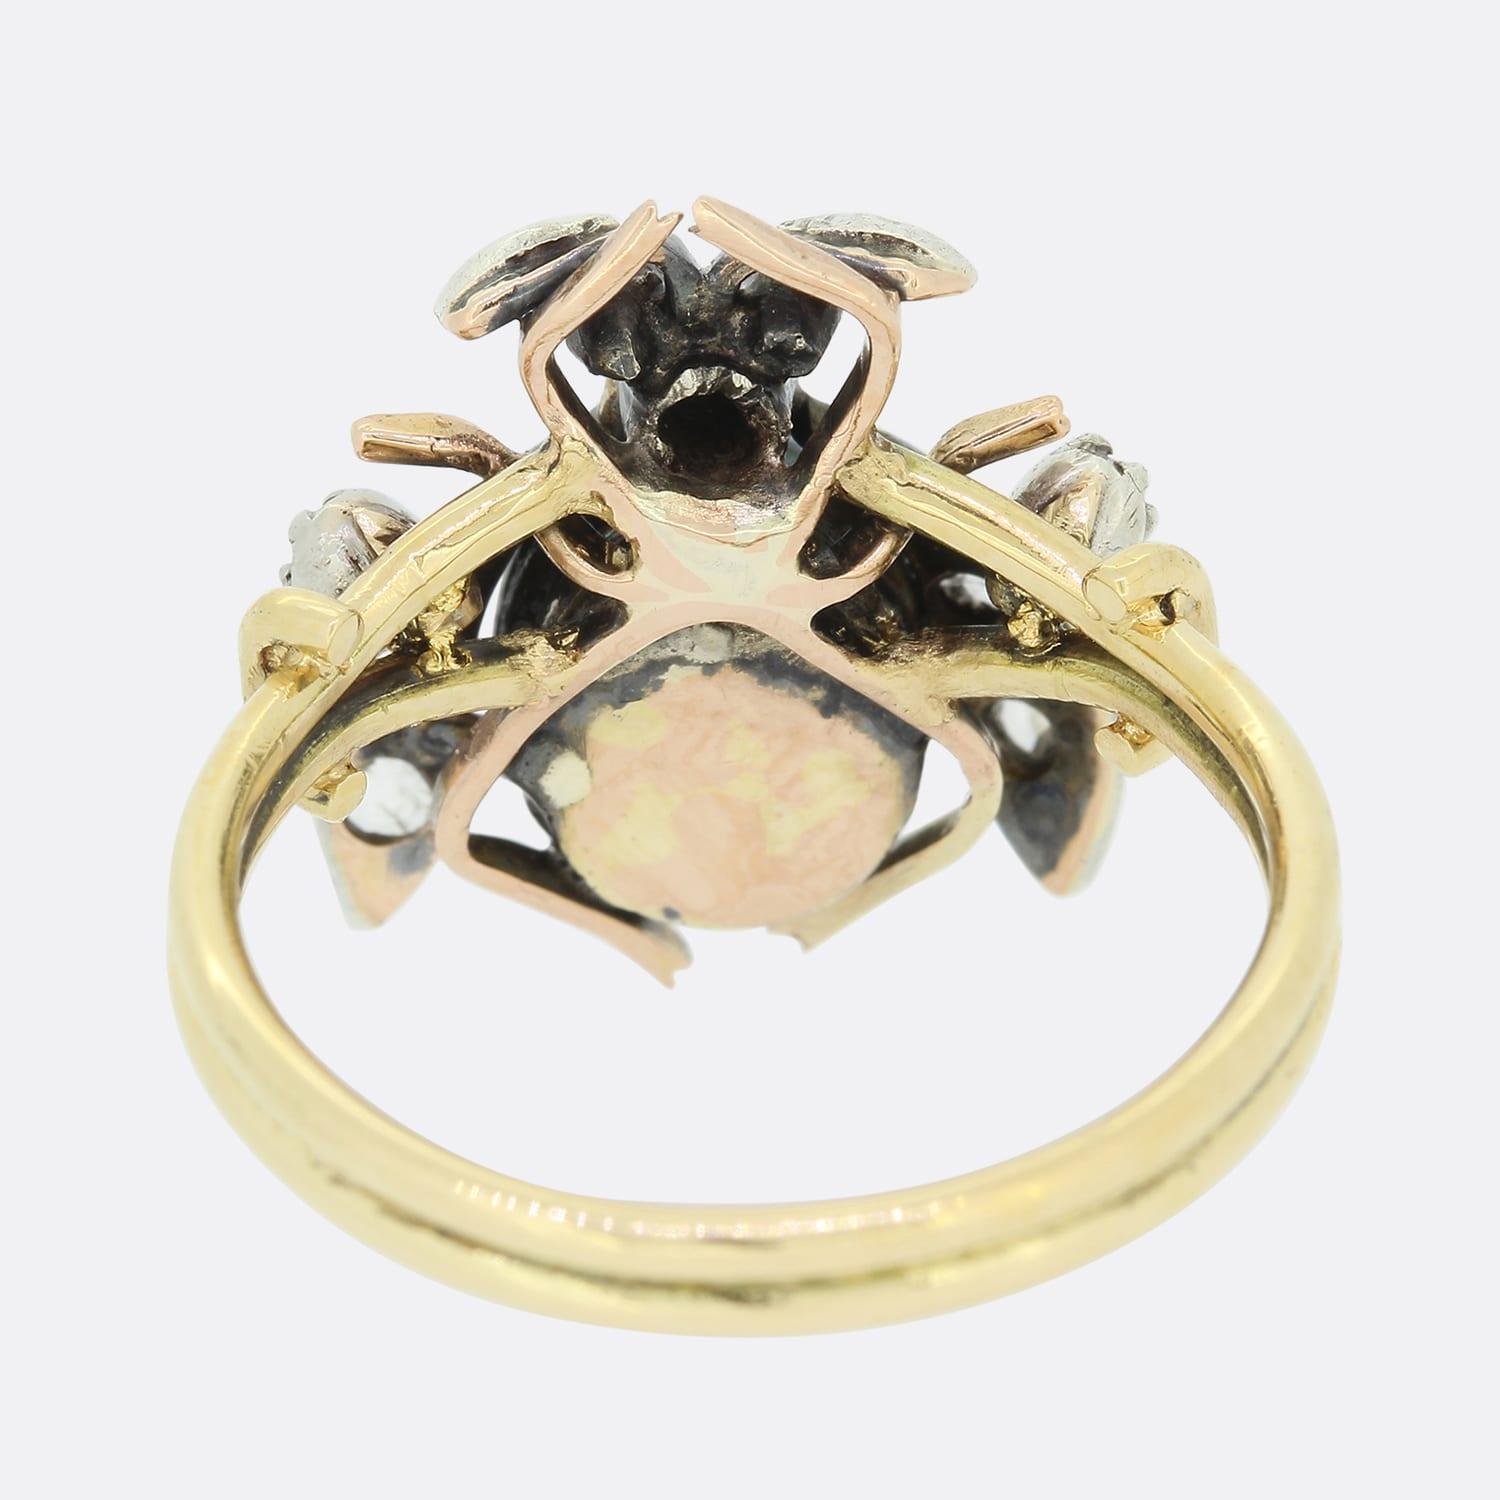 Dies ist ein 18ct Gelbgold Diamant, Perle und Rubin Fliege Ring. Der Ring besteht aus einer natürlichen schwarzen Perle, die einen Teil des Körpers ausmacht, während die Flügel mit Diamanten im Rosenschliff und die Augen mit Rubinen besetzt sind.